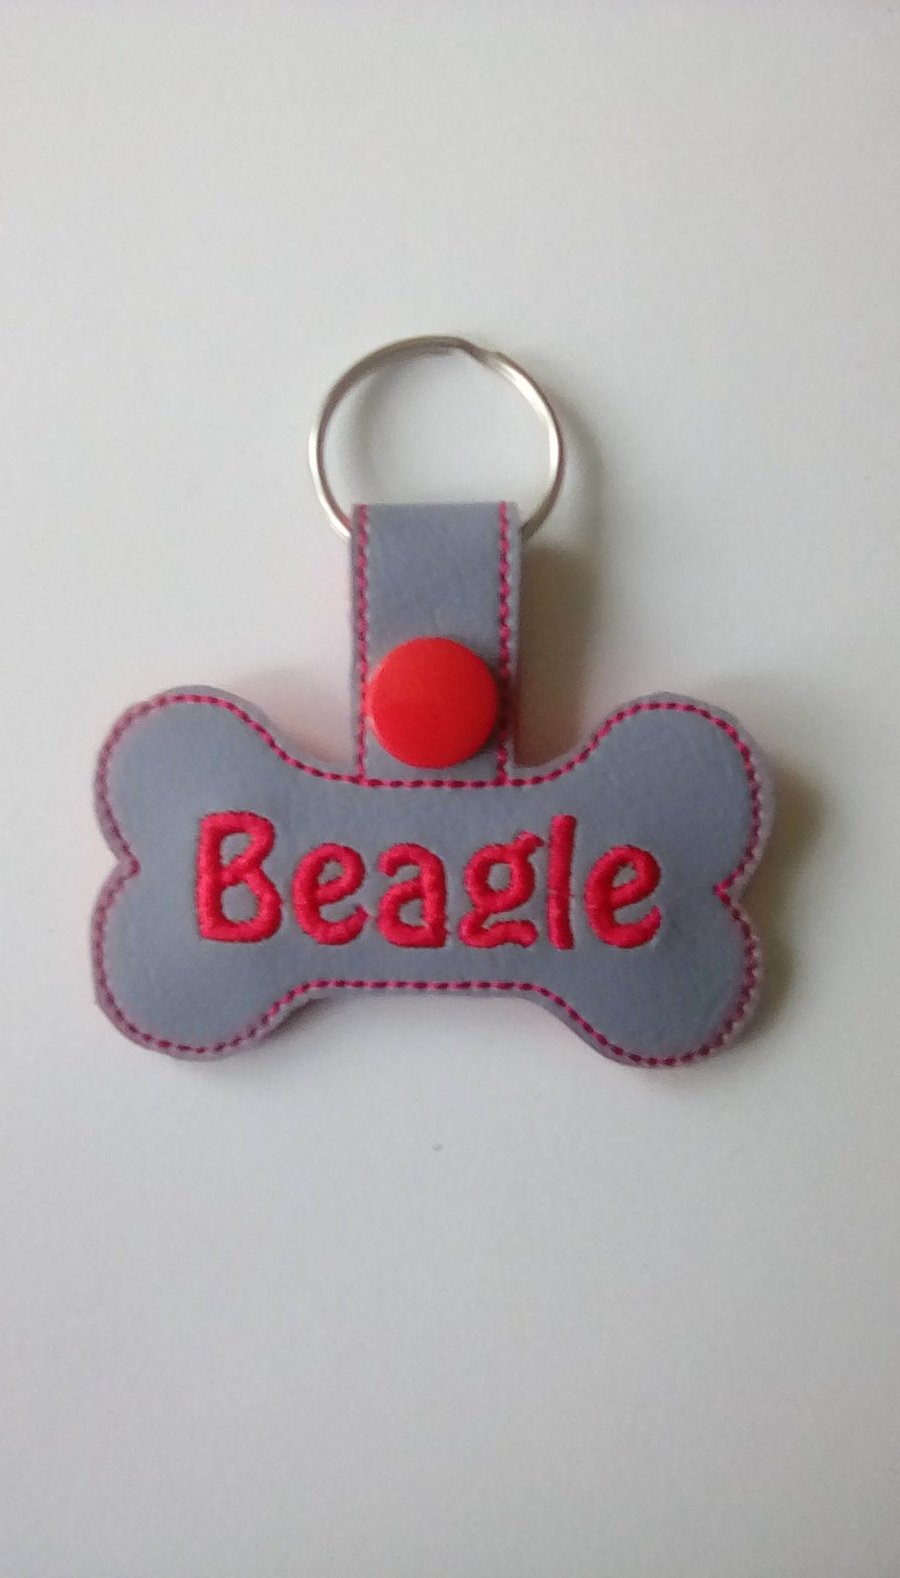 642. Beagle bone shaped keyring.